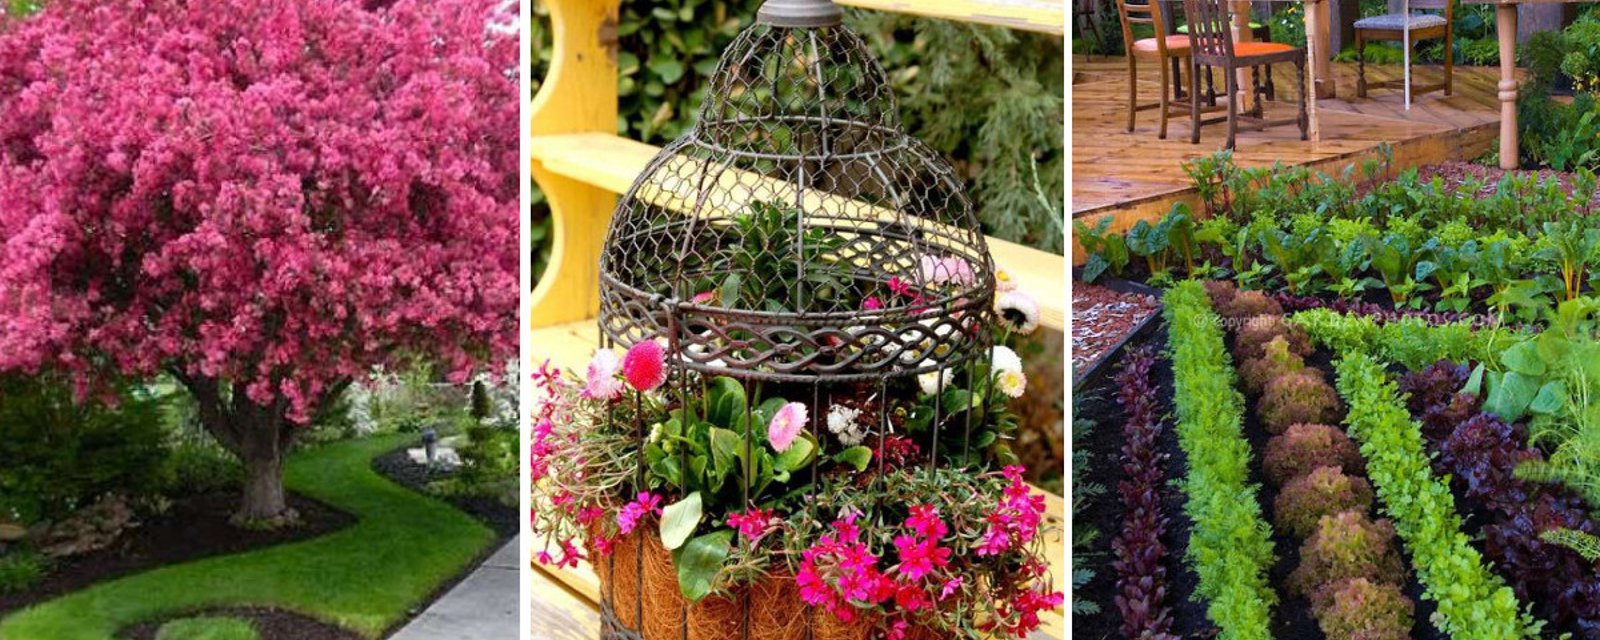 18 belles idées pour décorer son jardin différemment!